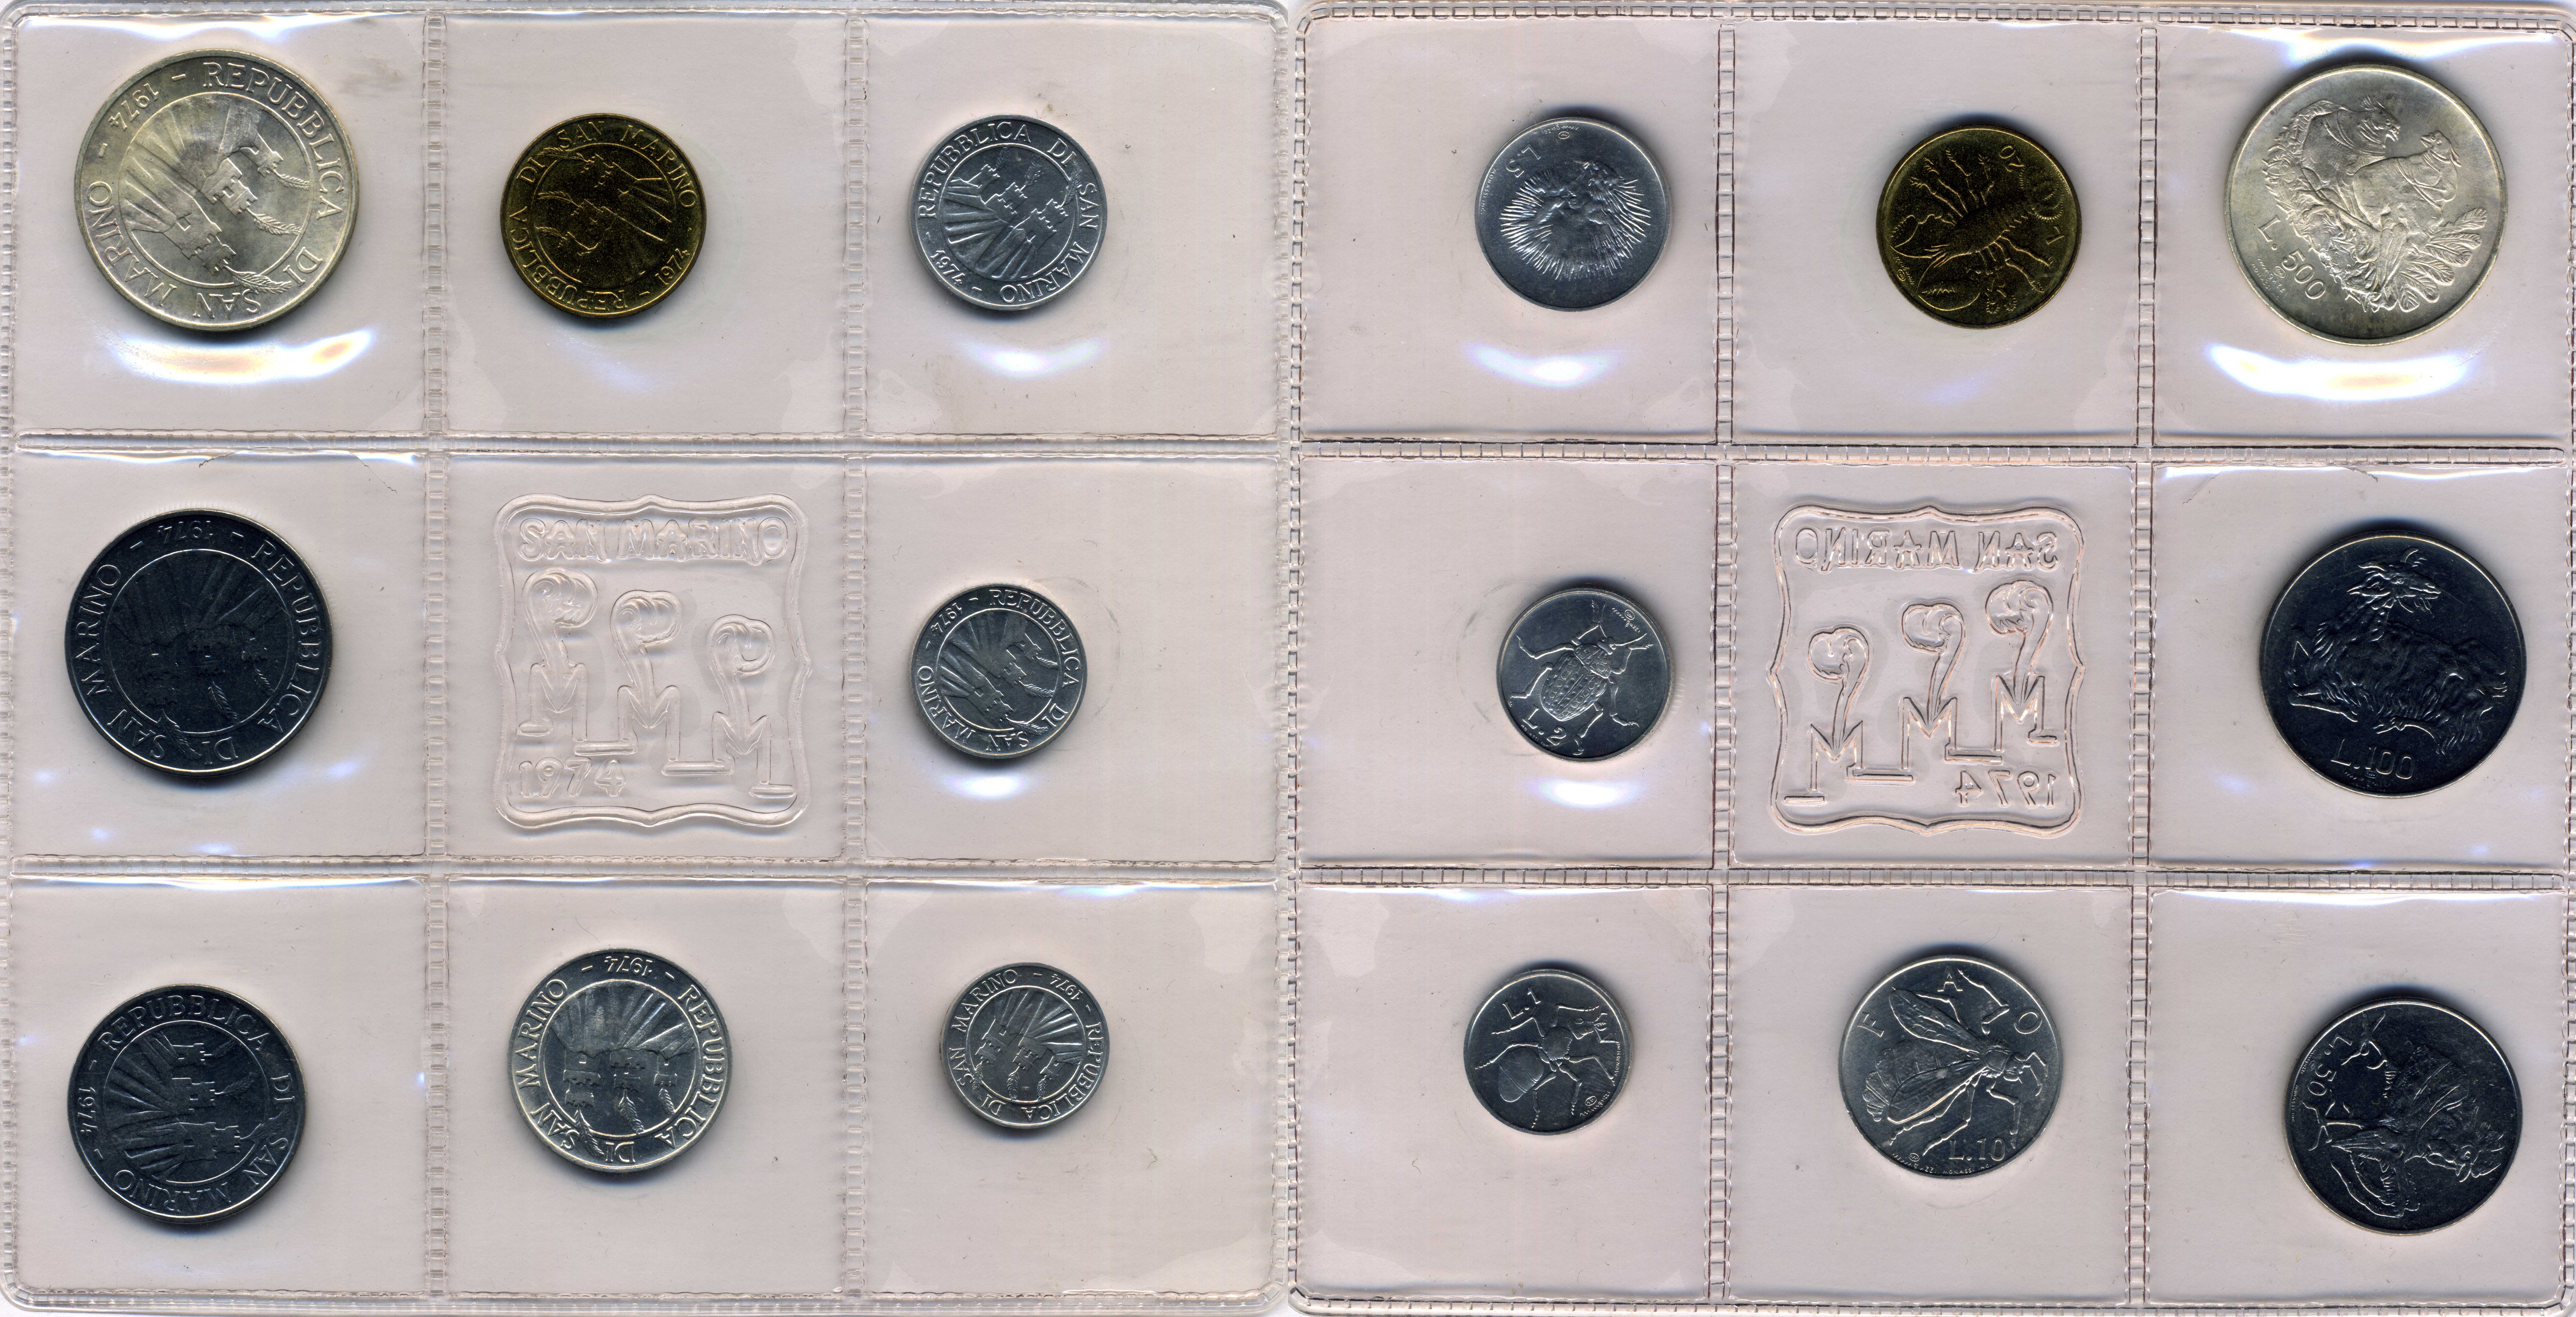 20 32 33. Годовые наборы монет евро Сан-Марино 2019. Годовые наборы монет евро Сан-Марино. Железные деньги Сан Марино фото.